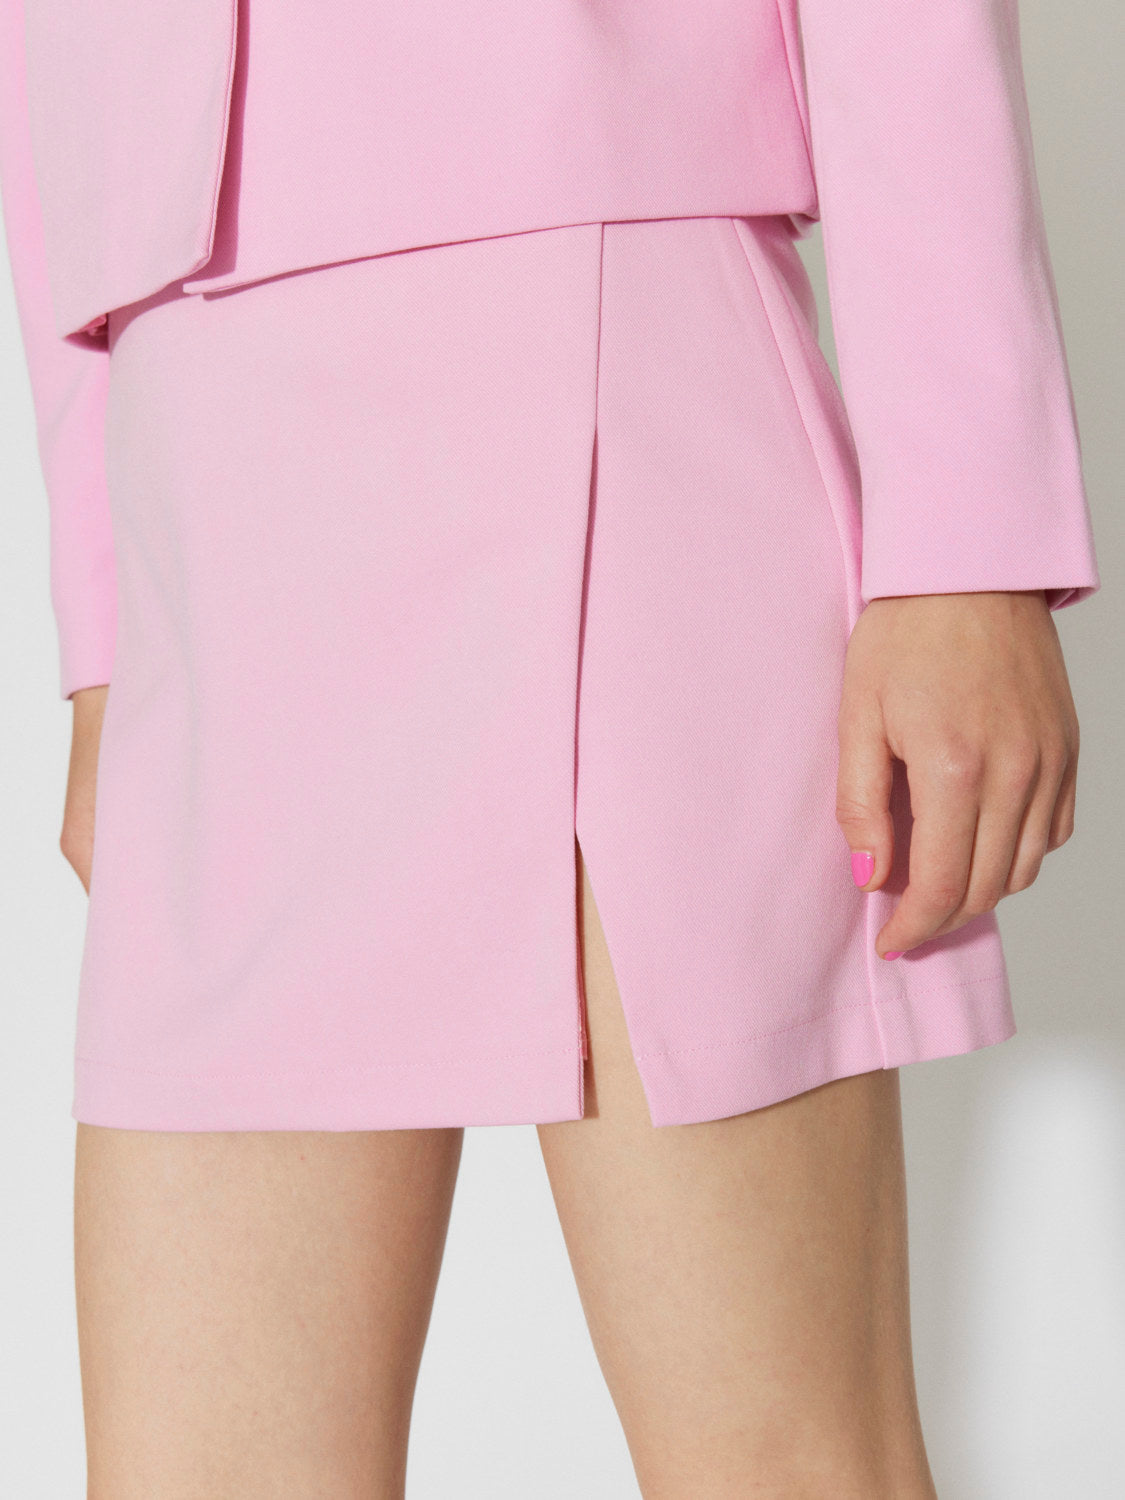 SNBILLIE Skirt - Prism Pink